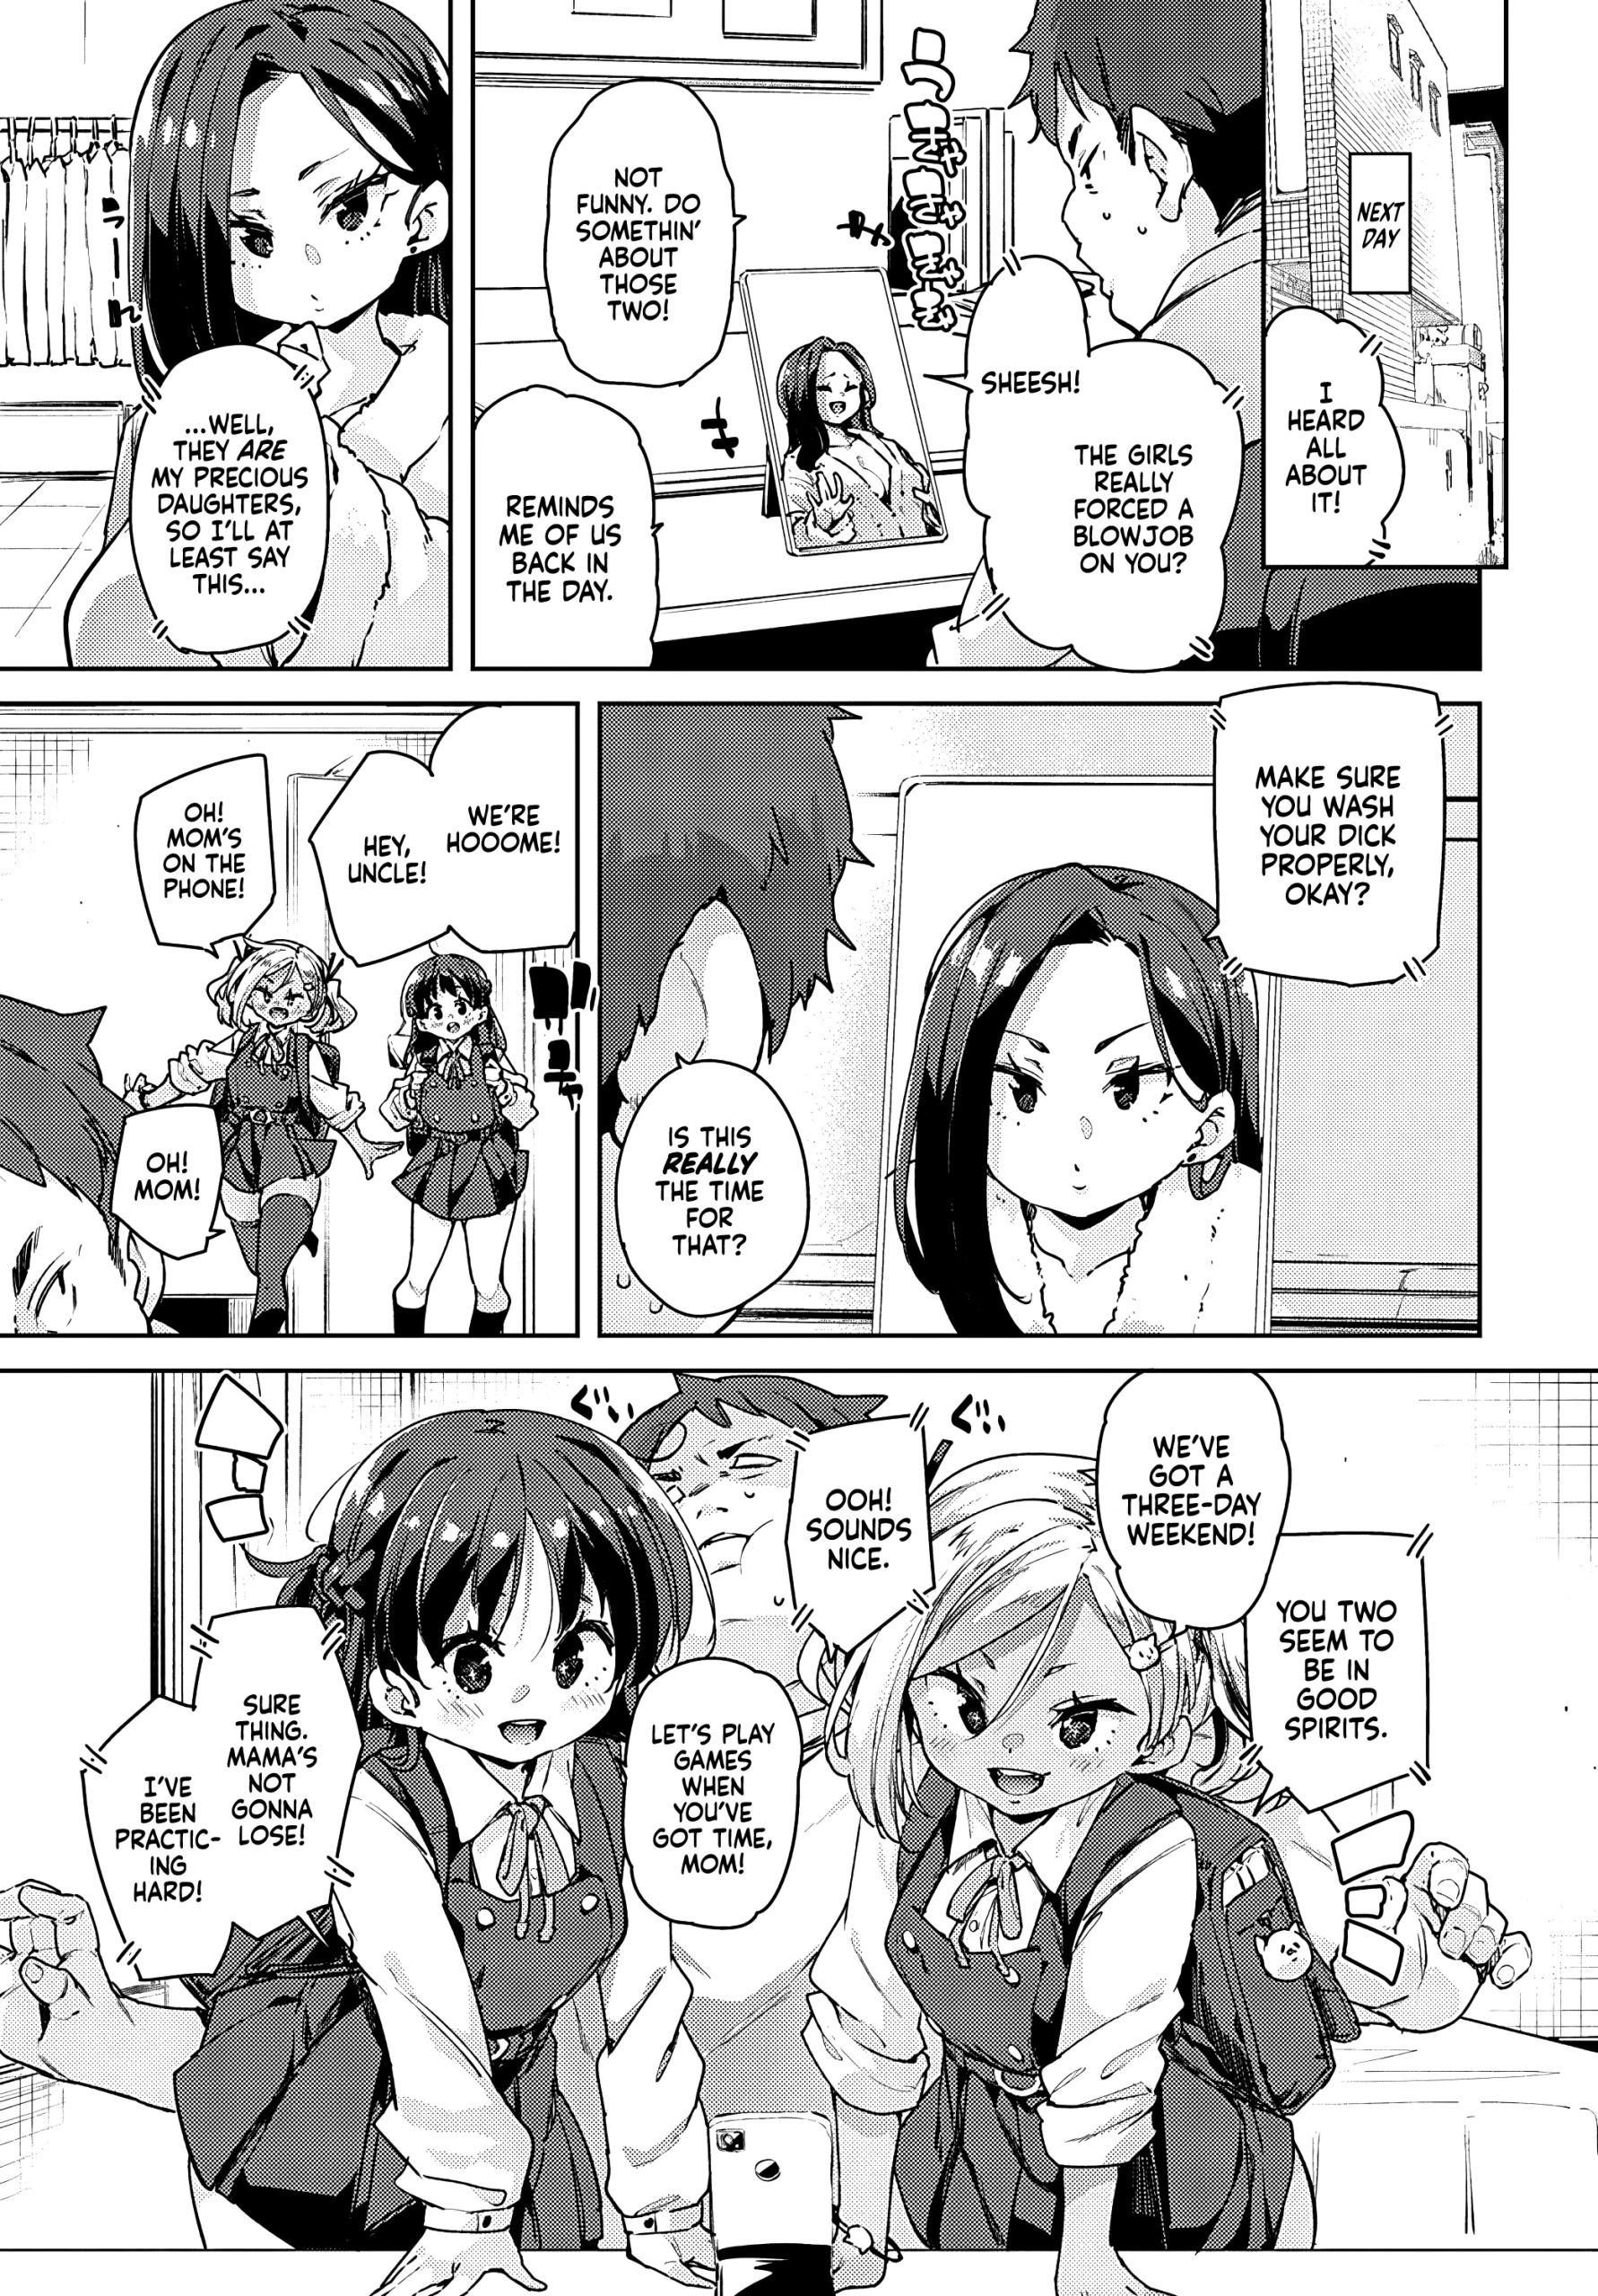 Naughty Development Diary 1-2 hentai manga picture 9